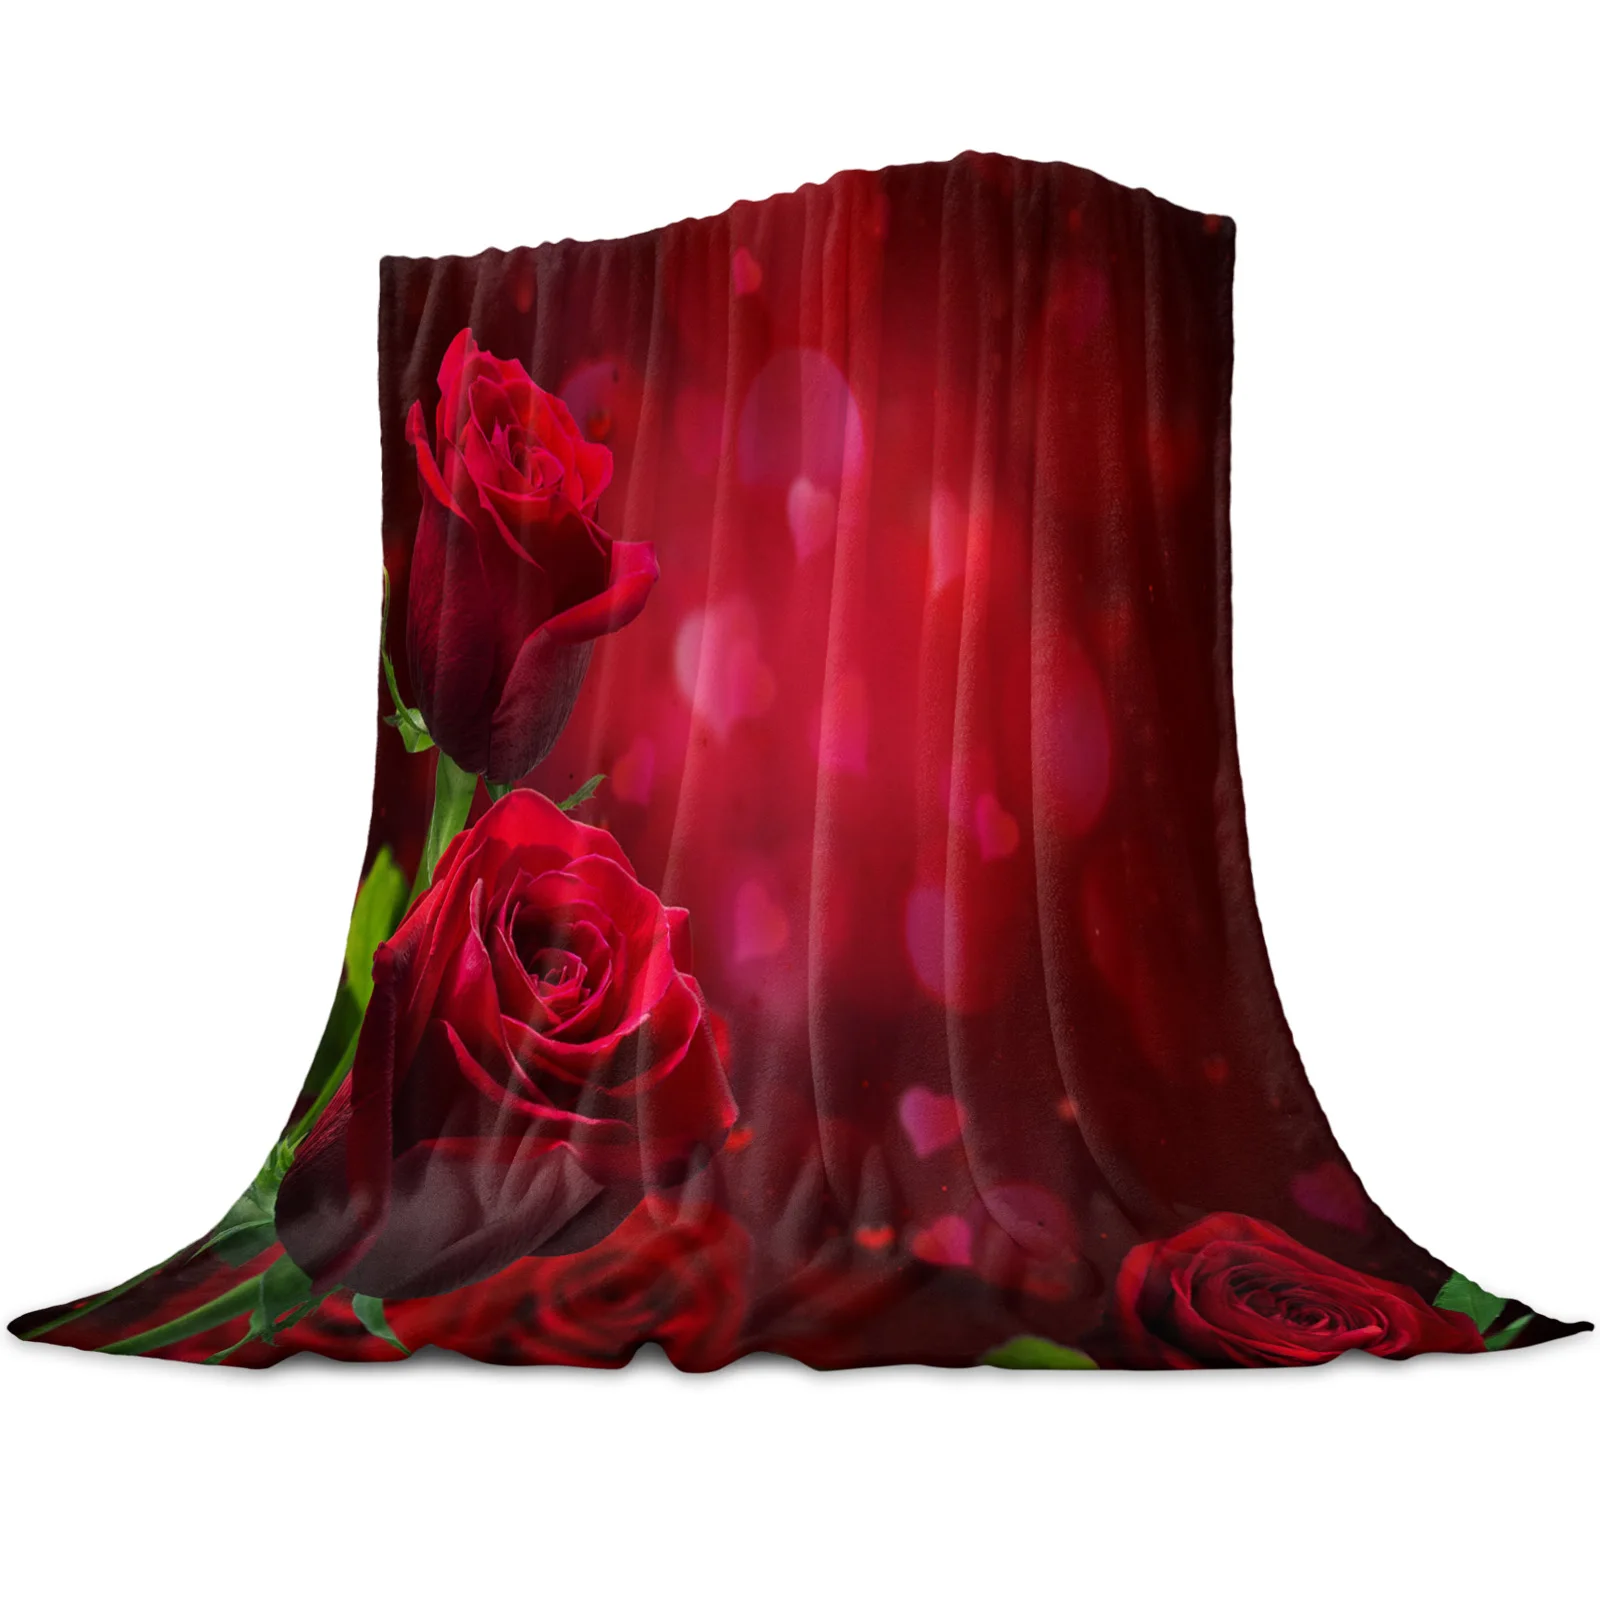 

Романтическое мягкое теплое Флисовое одеяло с красными розами, зимнее покрывало для дивана, постельное белье для путешествий, фланелевые о...